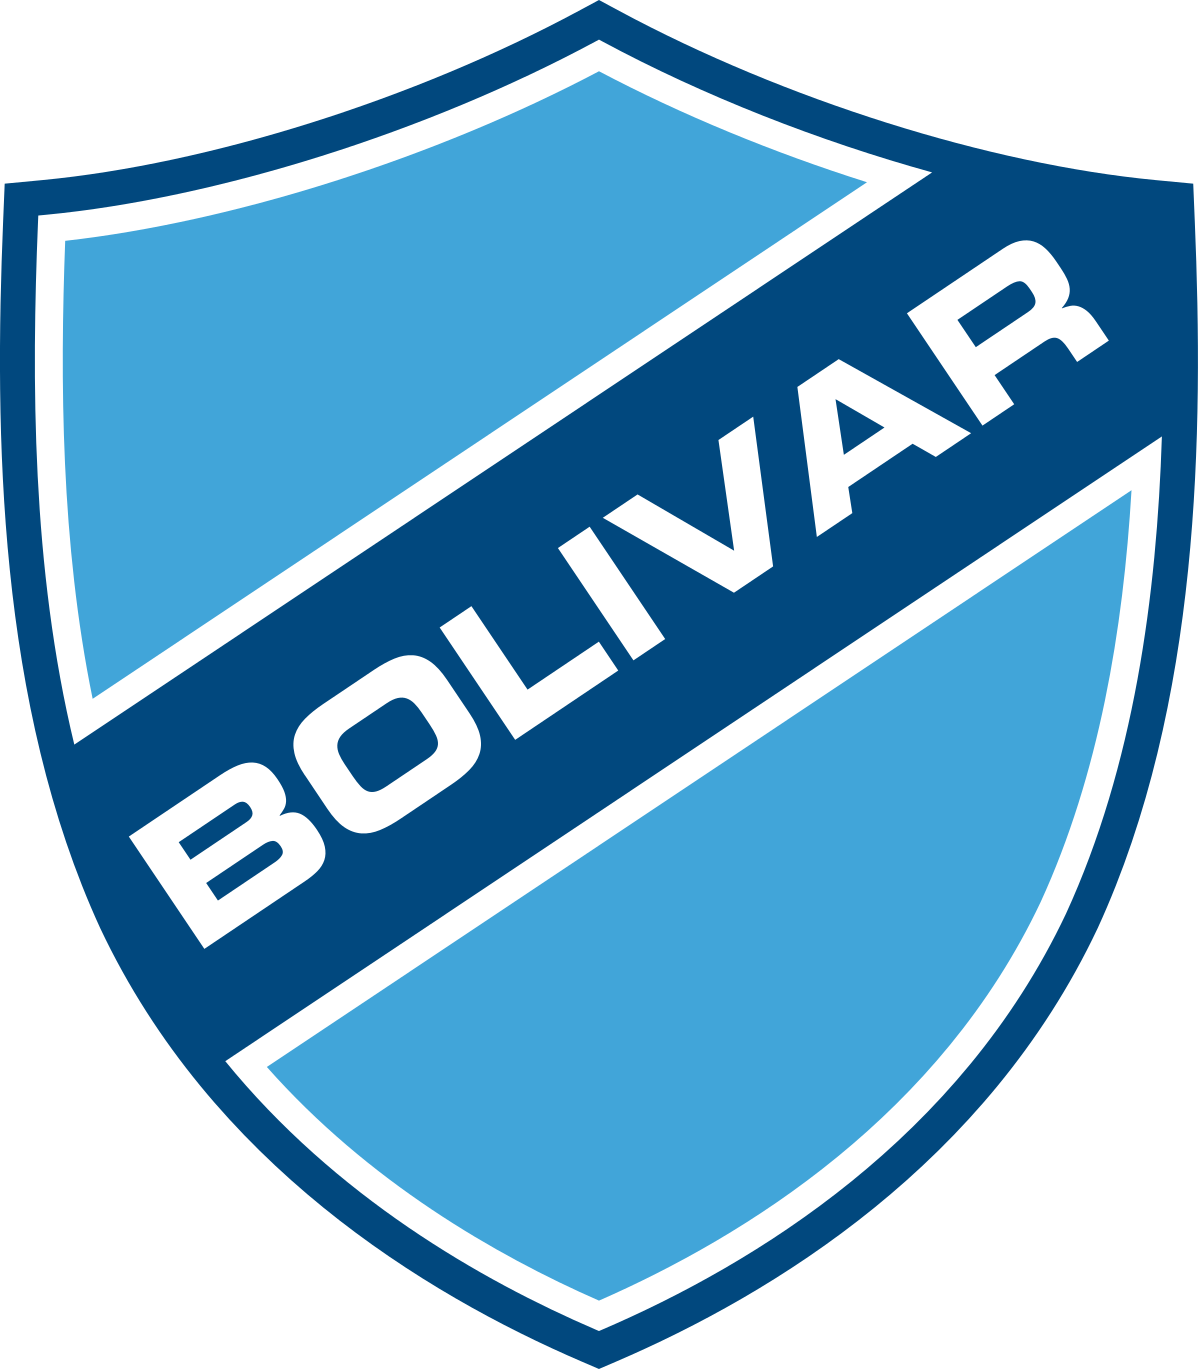 Club Bolivar vs Cerro Porteno Prediction: Can Cerro Porteno Keep its Chances Illuminated for the Next Stage 